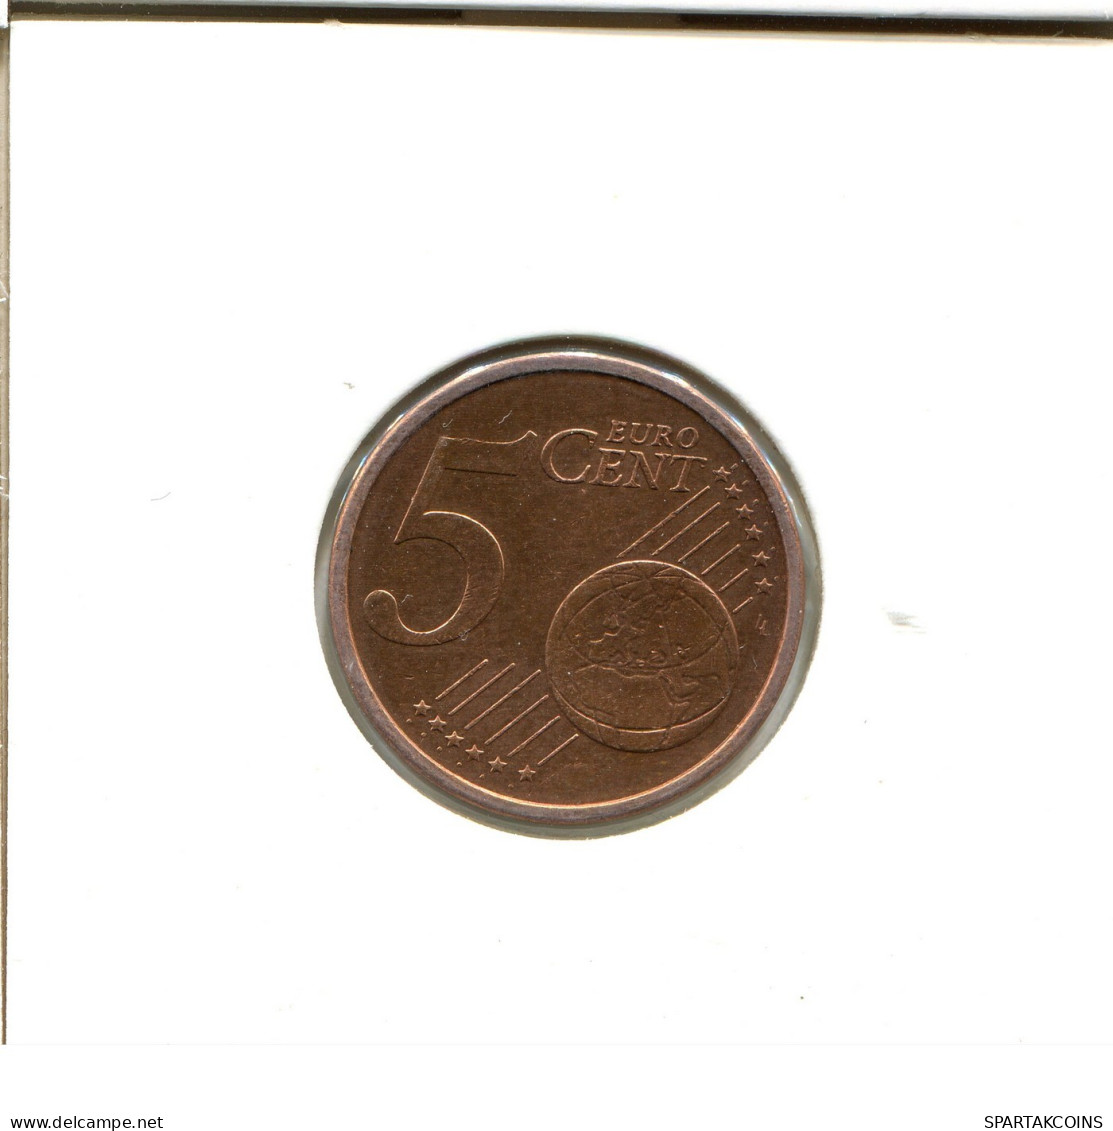 5 EURO CENTS 2004 ALEMANIA Moneda GERMANY #EU475.E.A - Allemagne